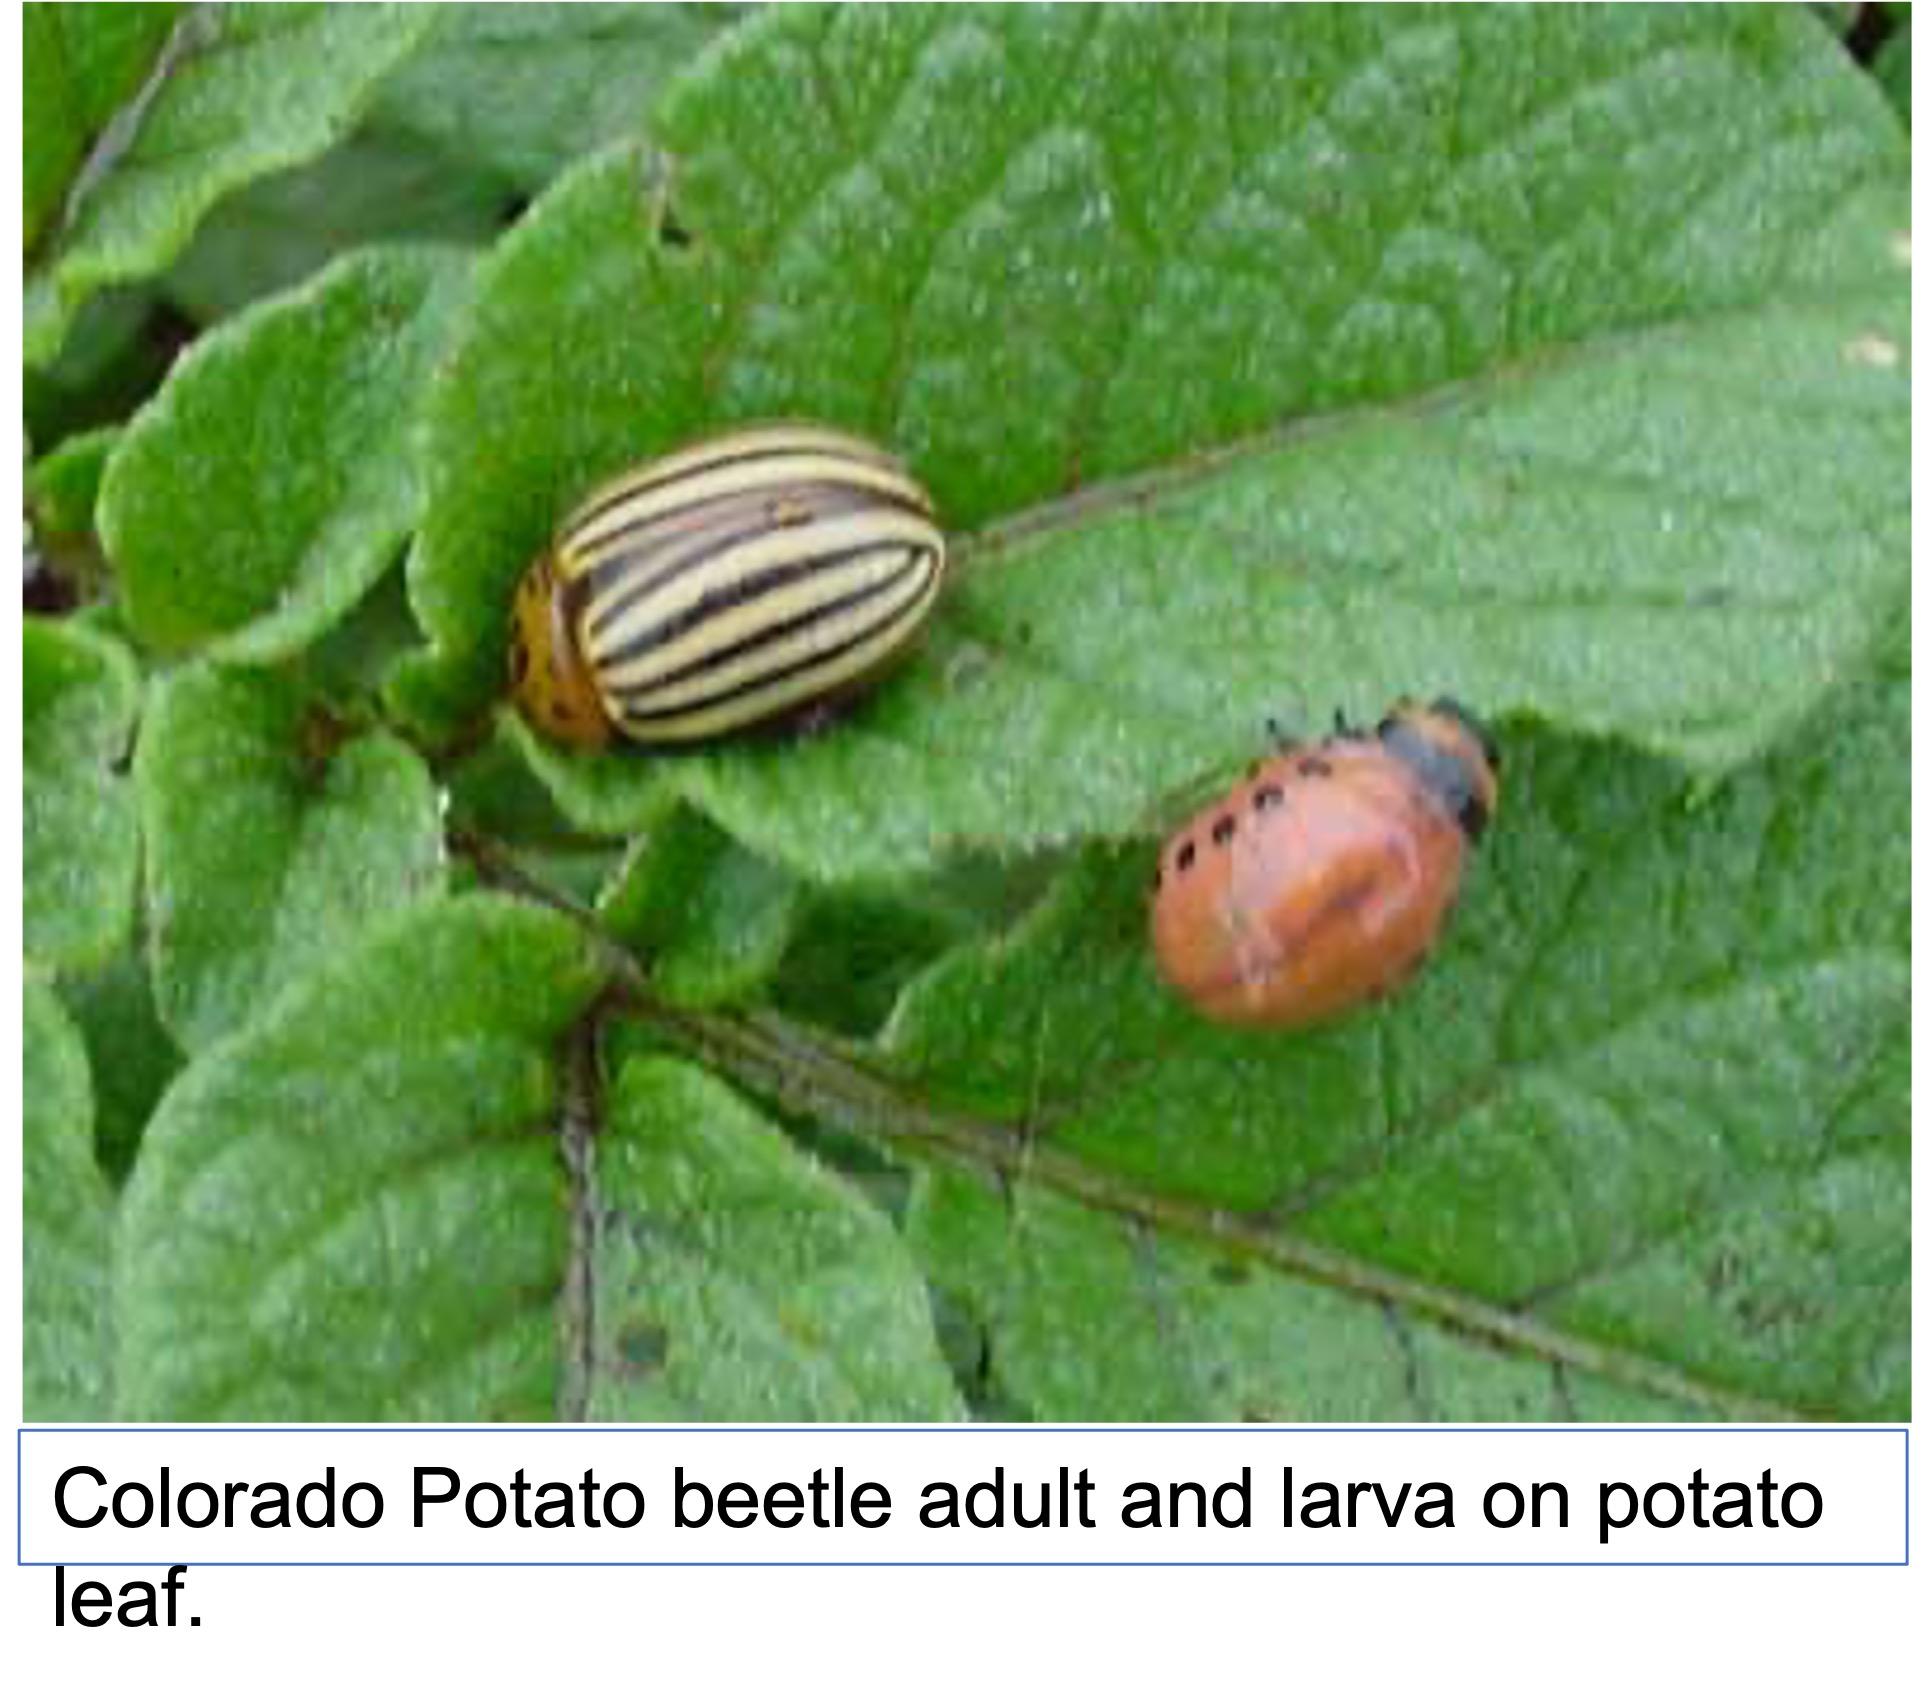 up close of Colorado beetles on potato plants